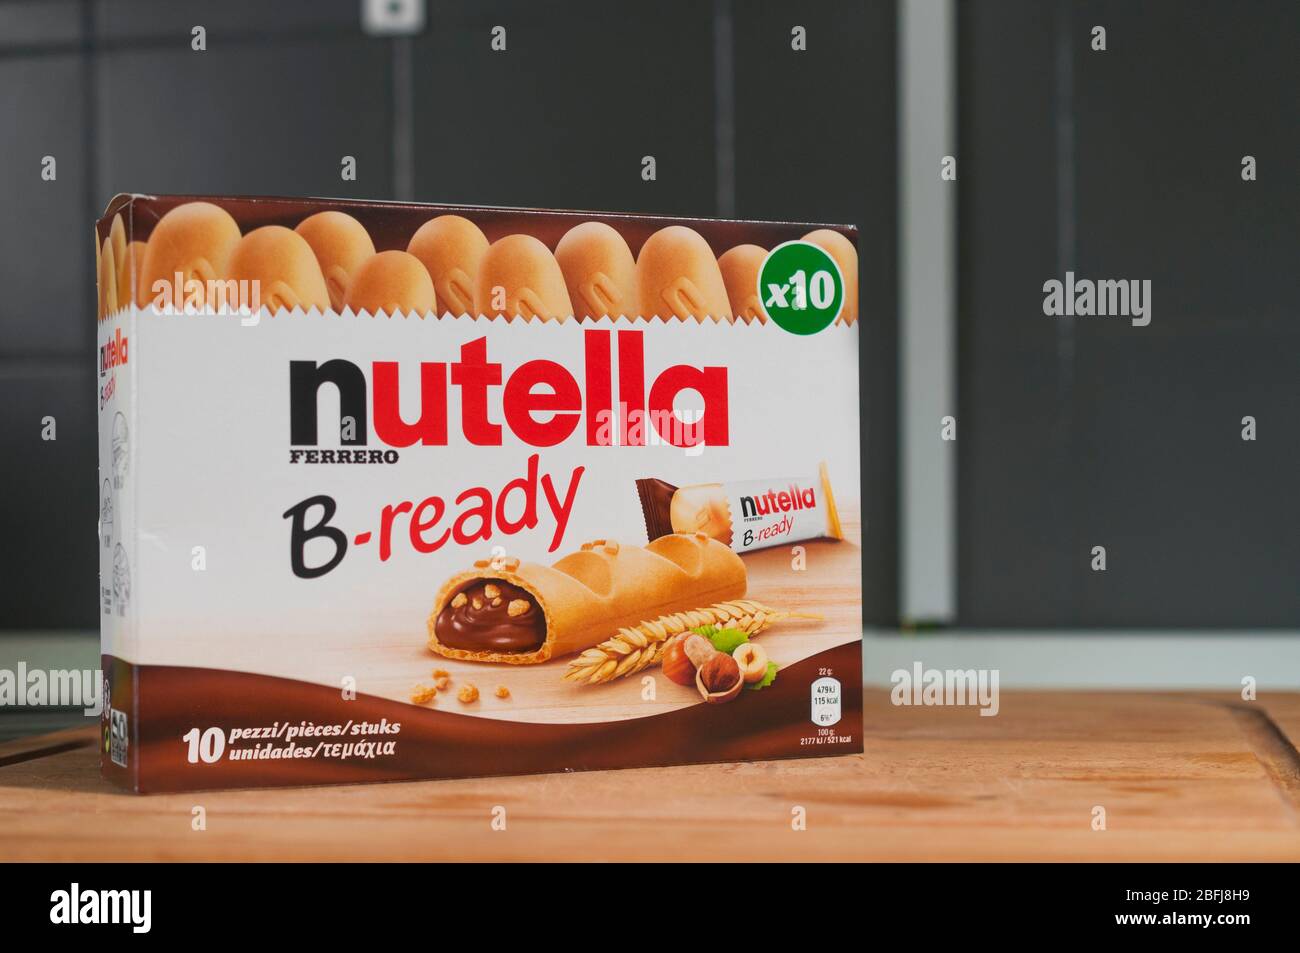 Carrara, Italie - 19 avril 2020 - Pack de snack-bars Nutella B-Ready sur un tableau de découpe en bois. Nutella est une crème de noisette célèbre dans le monde entier. Banque D'Images